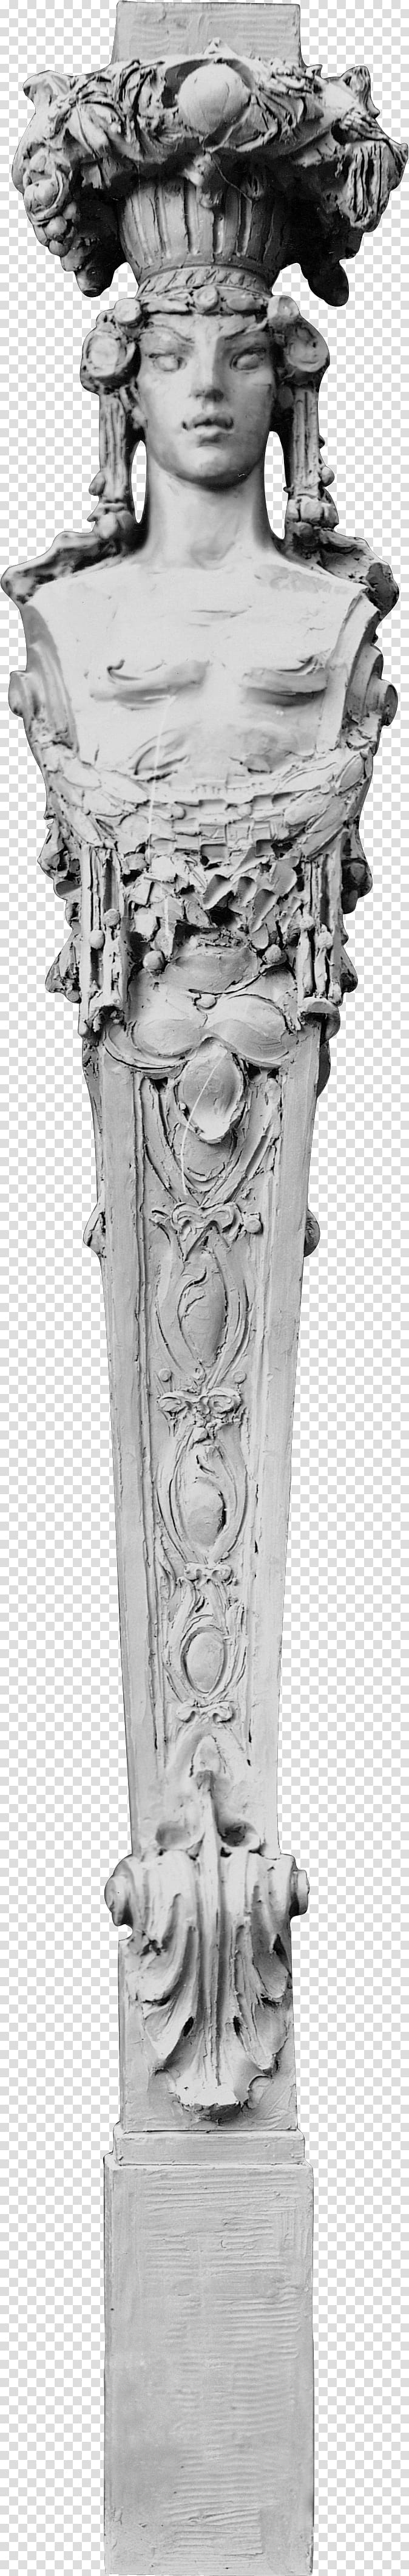 Sculpture Column Architecture Statue, column transparent background PNG clipart